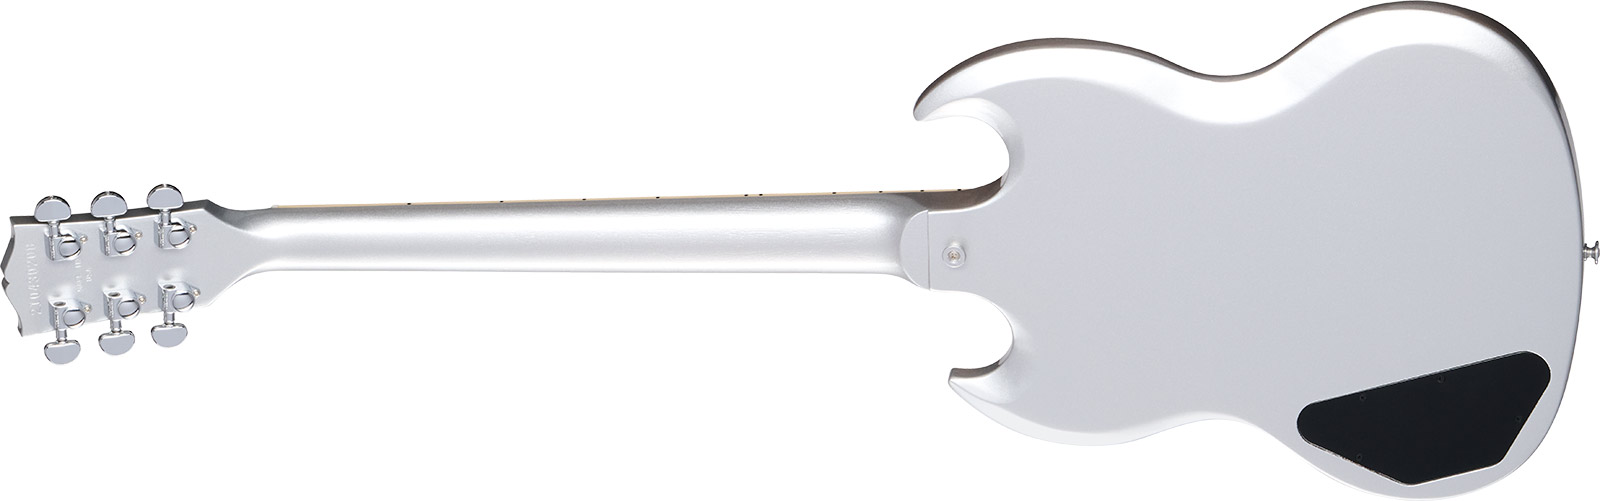 Gibson Sg Standard Custom Color 2h Ht Rw - Silver Mist - Double Cut E-Gitarre - Variation 1